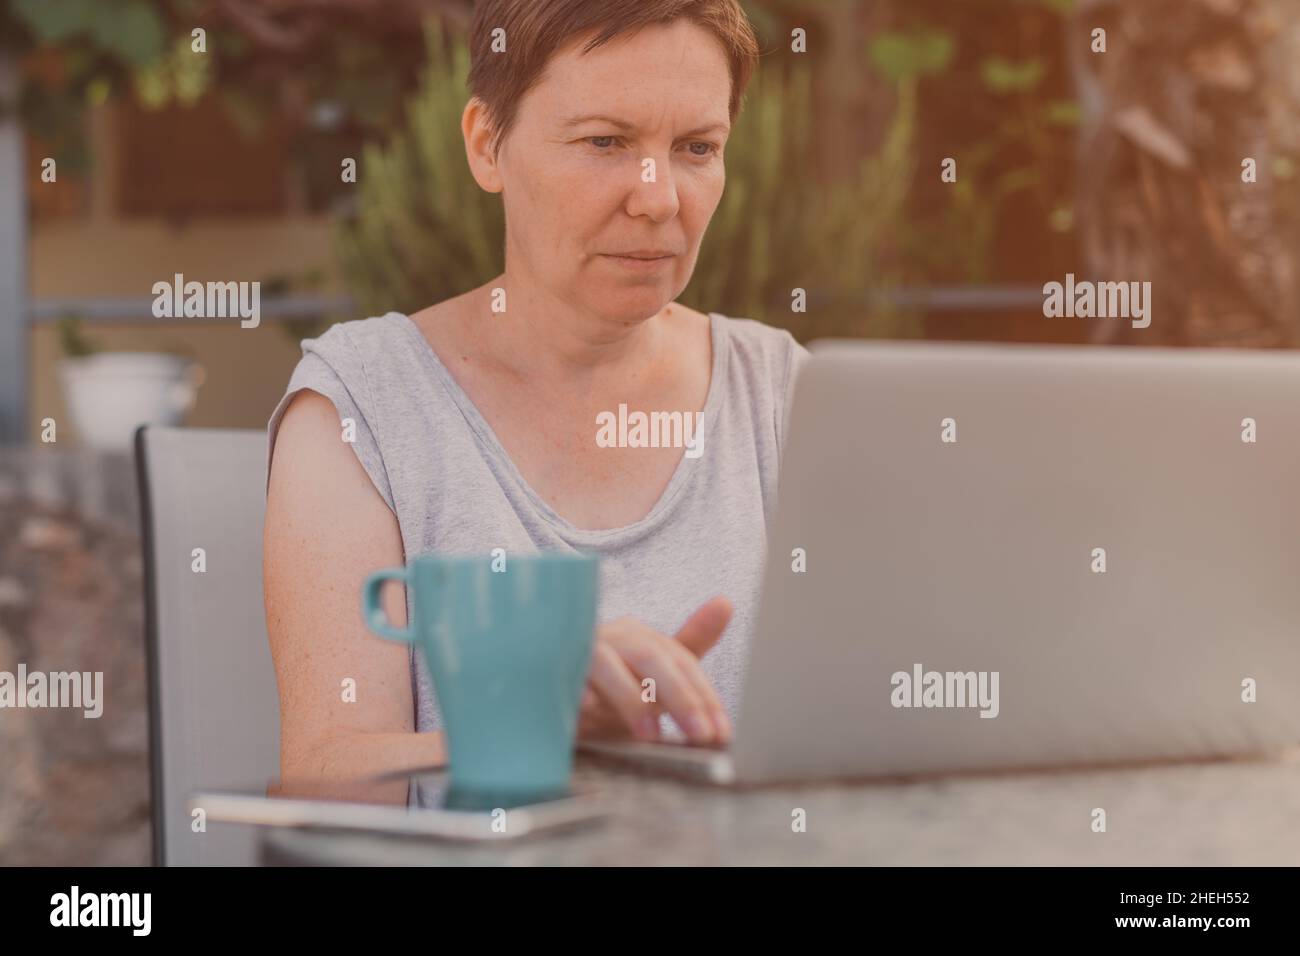 Seriöse freiberufliche Frau und digitale Nomade arbeiten auf Laptop-Computer während der Sommerferien Urlaub auf der Terrasse der Wohnung am Morgen Stockfoto